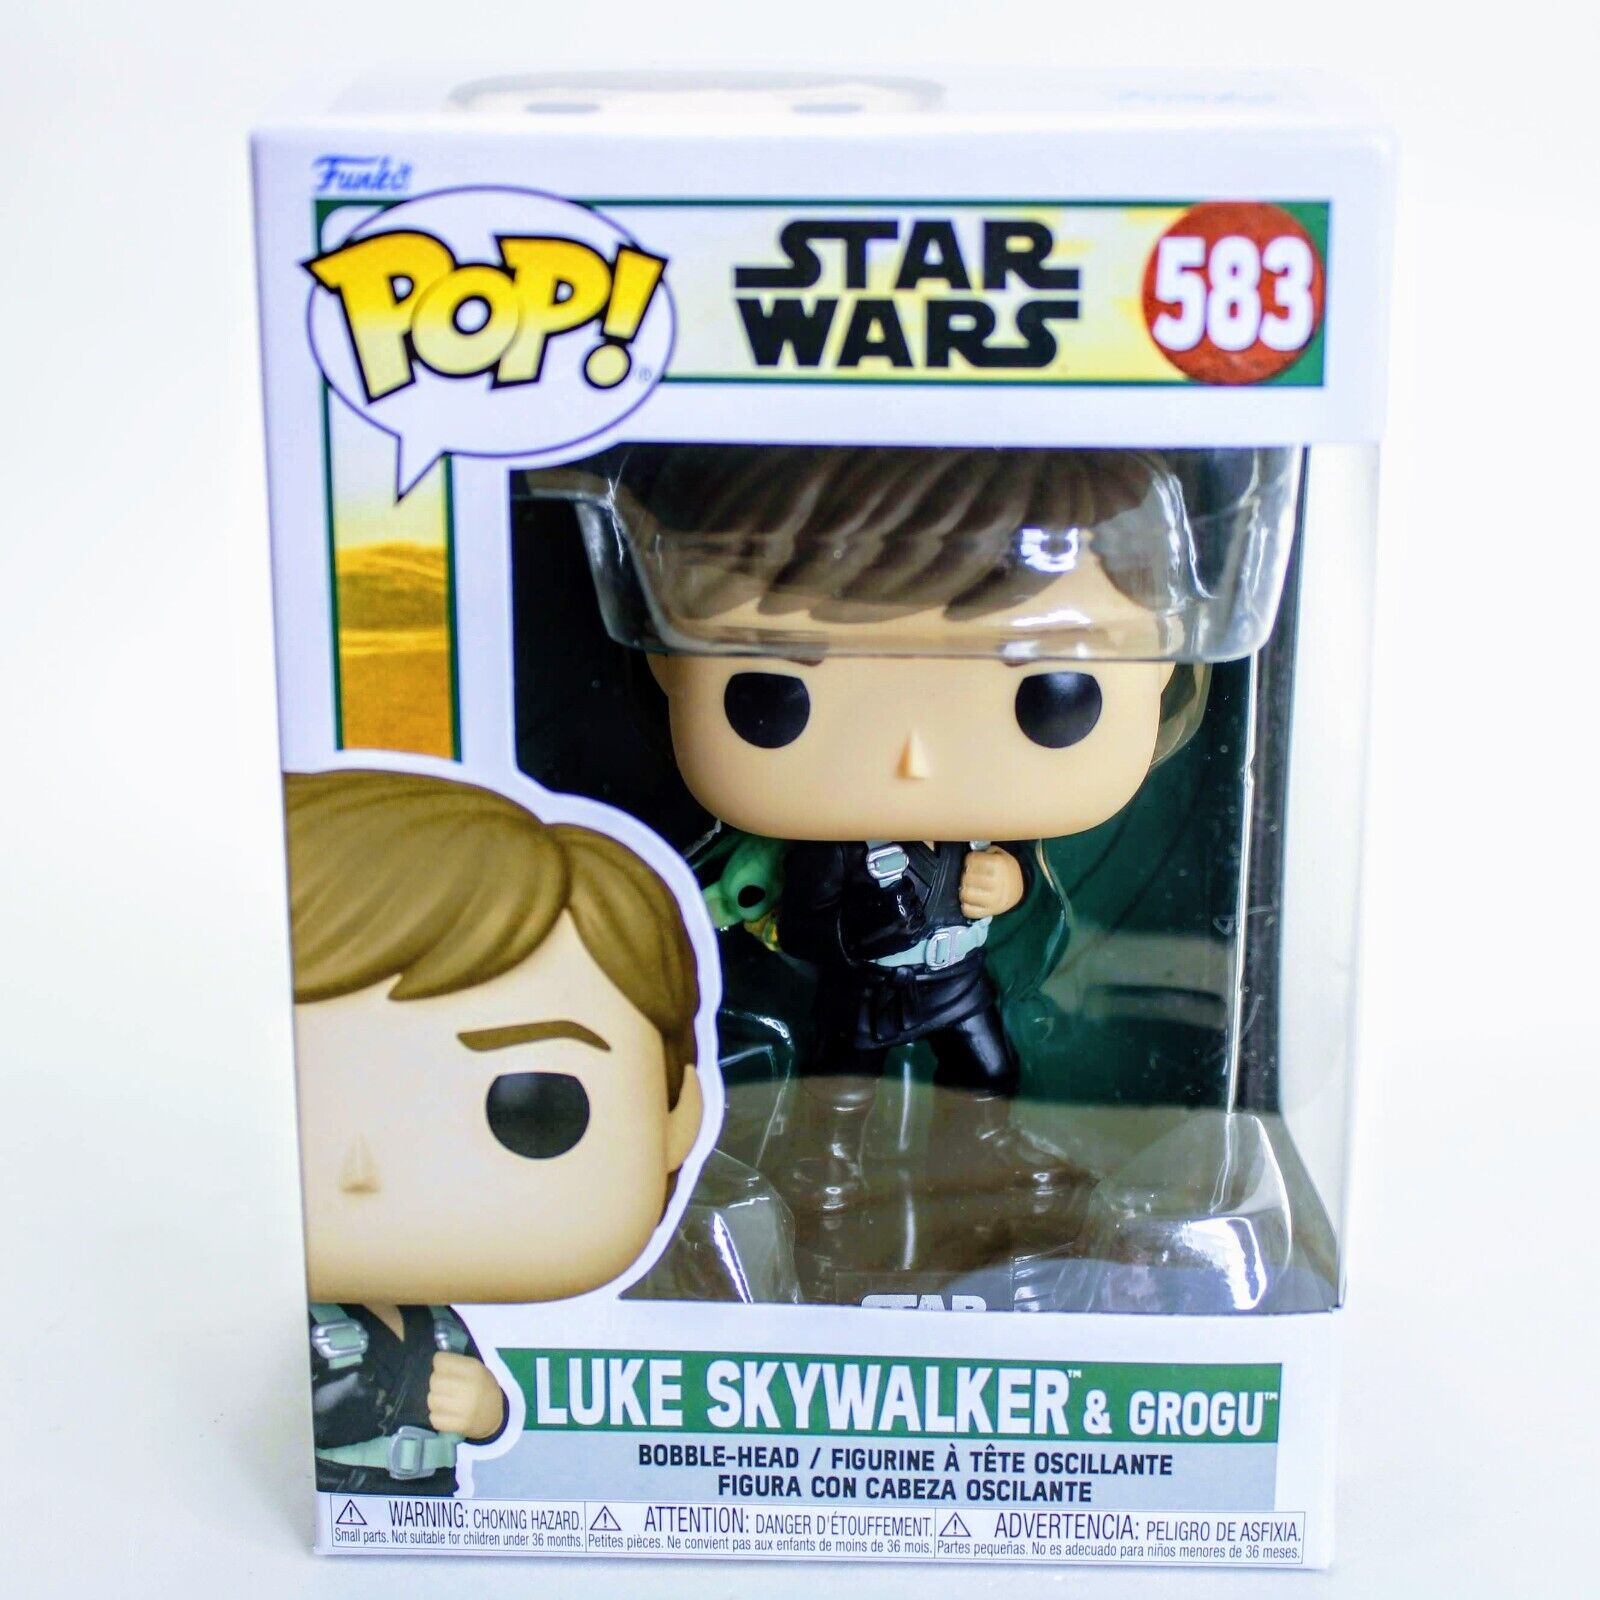 Obi-Wan - Young Luke Skywalker Vinyl Figur 633, Star Wars Funko Pop!